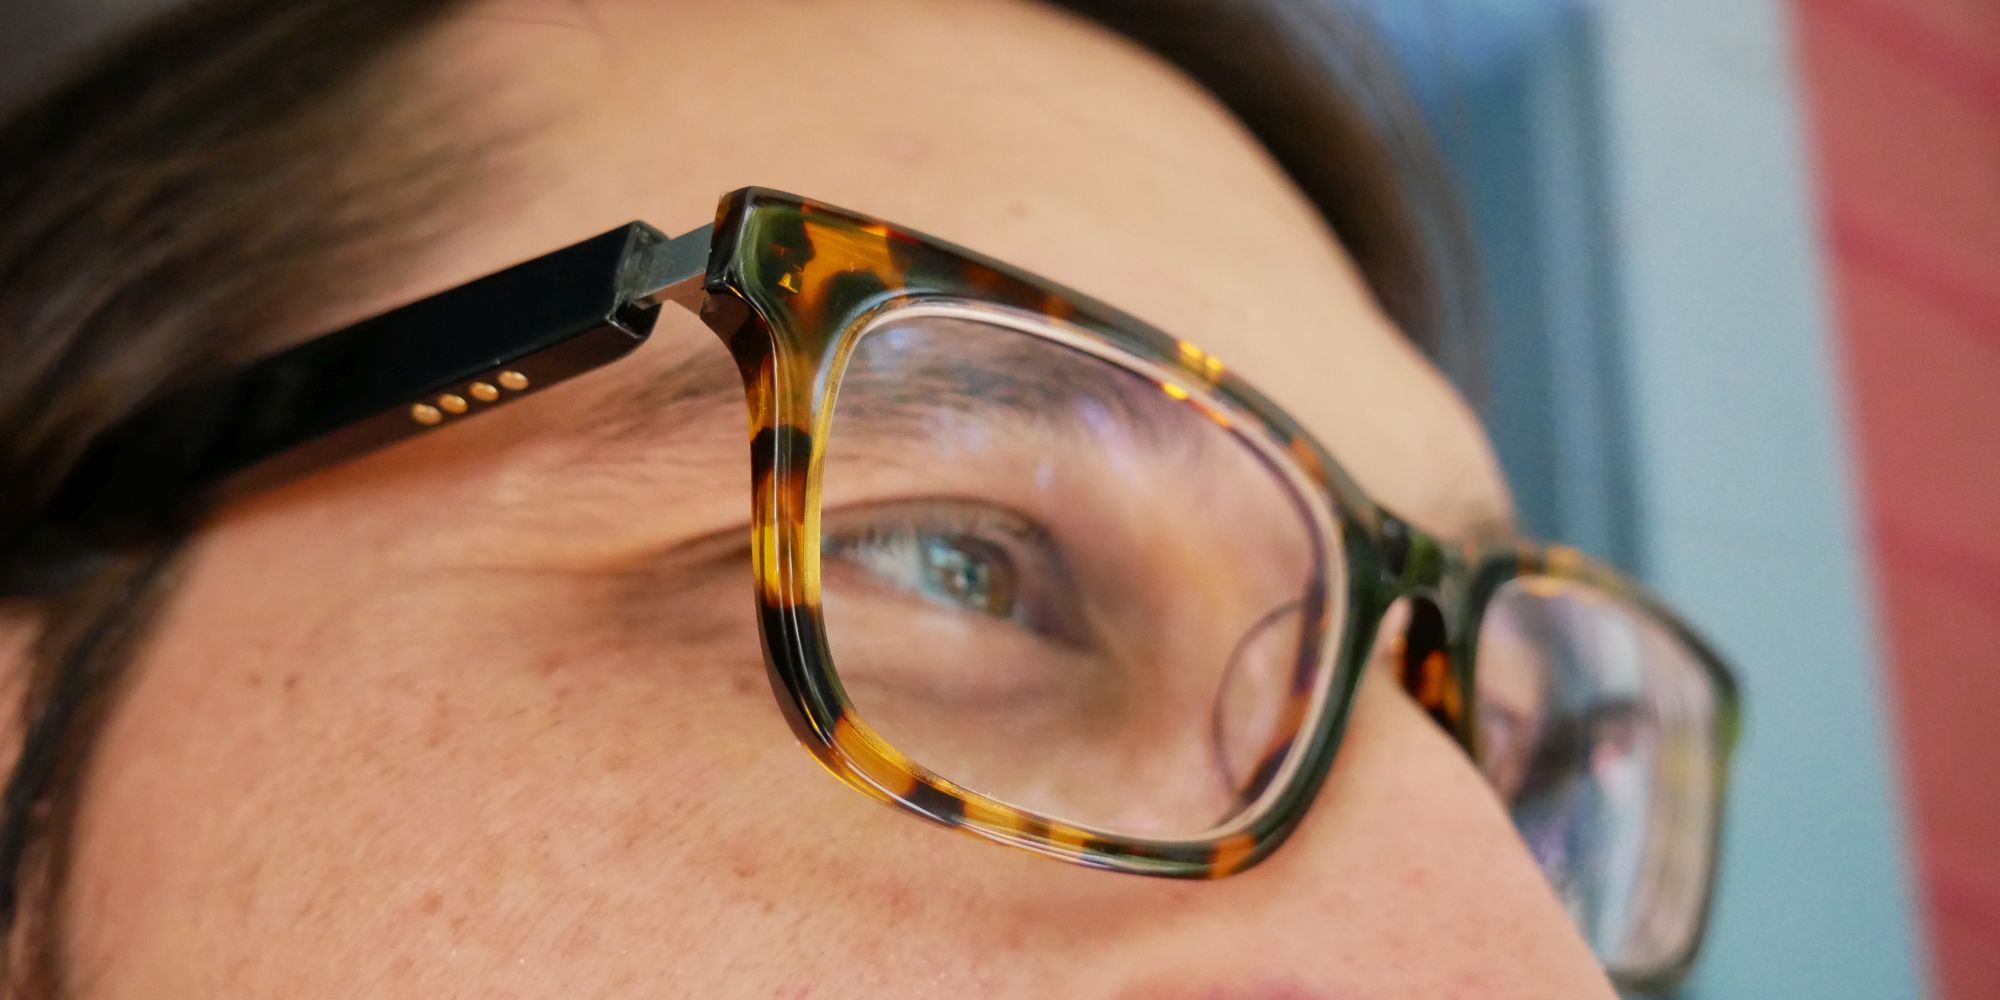 Vue Glasses Work Charging Port - Occhiali Vue Lite: un auricolare invisibile che sembra intelligente